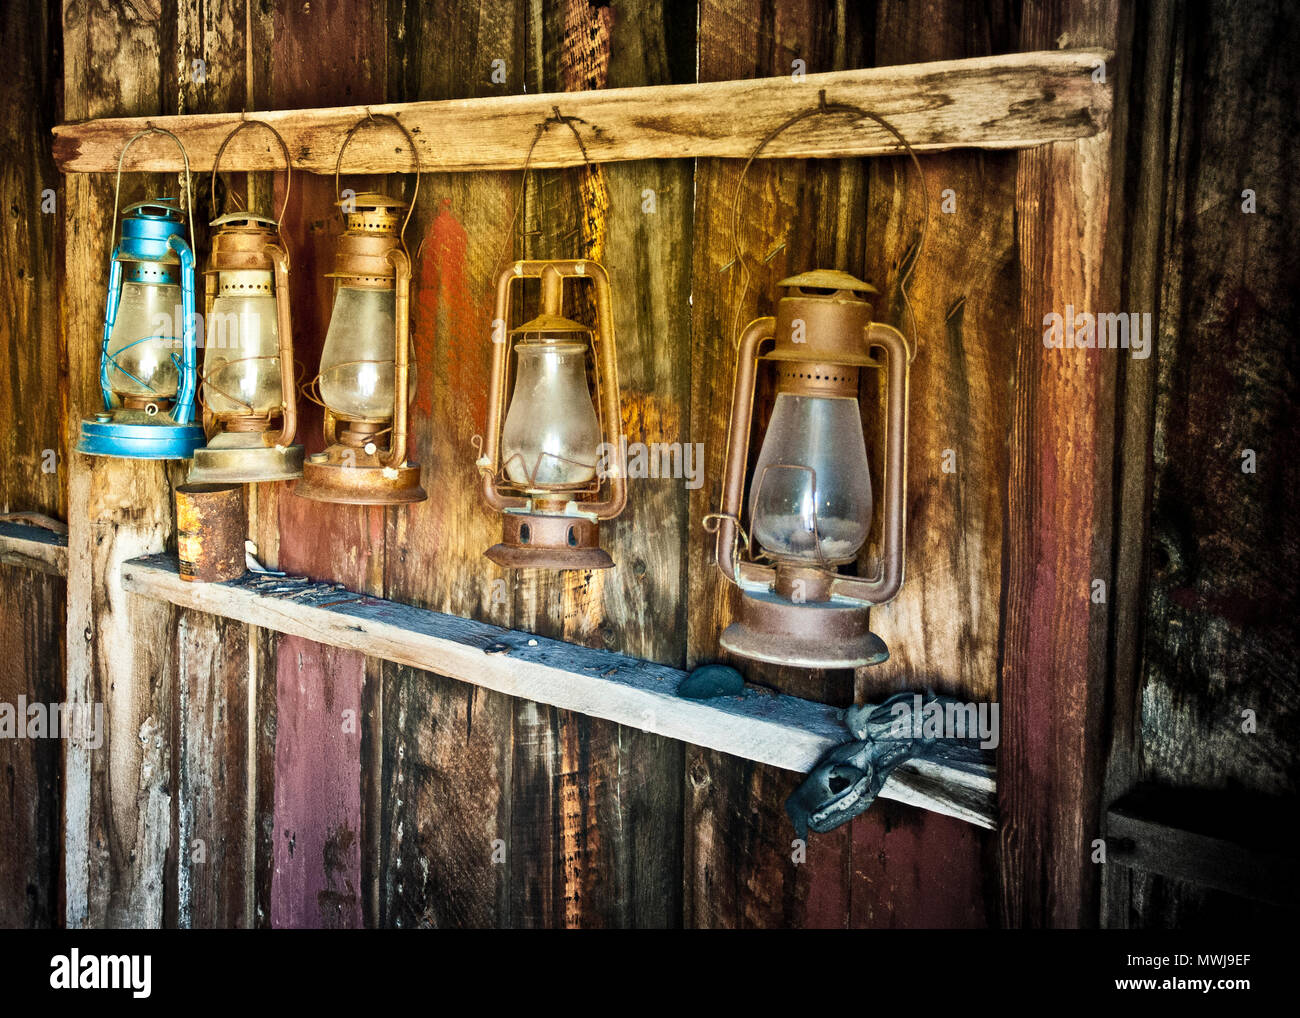 Anciennes lampes à huile utilisées dans les ménages. Accessoires pour éclairer l'intérieur des maisons, suspendus dans des brack abandonnés en bois. Banque D'Images